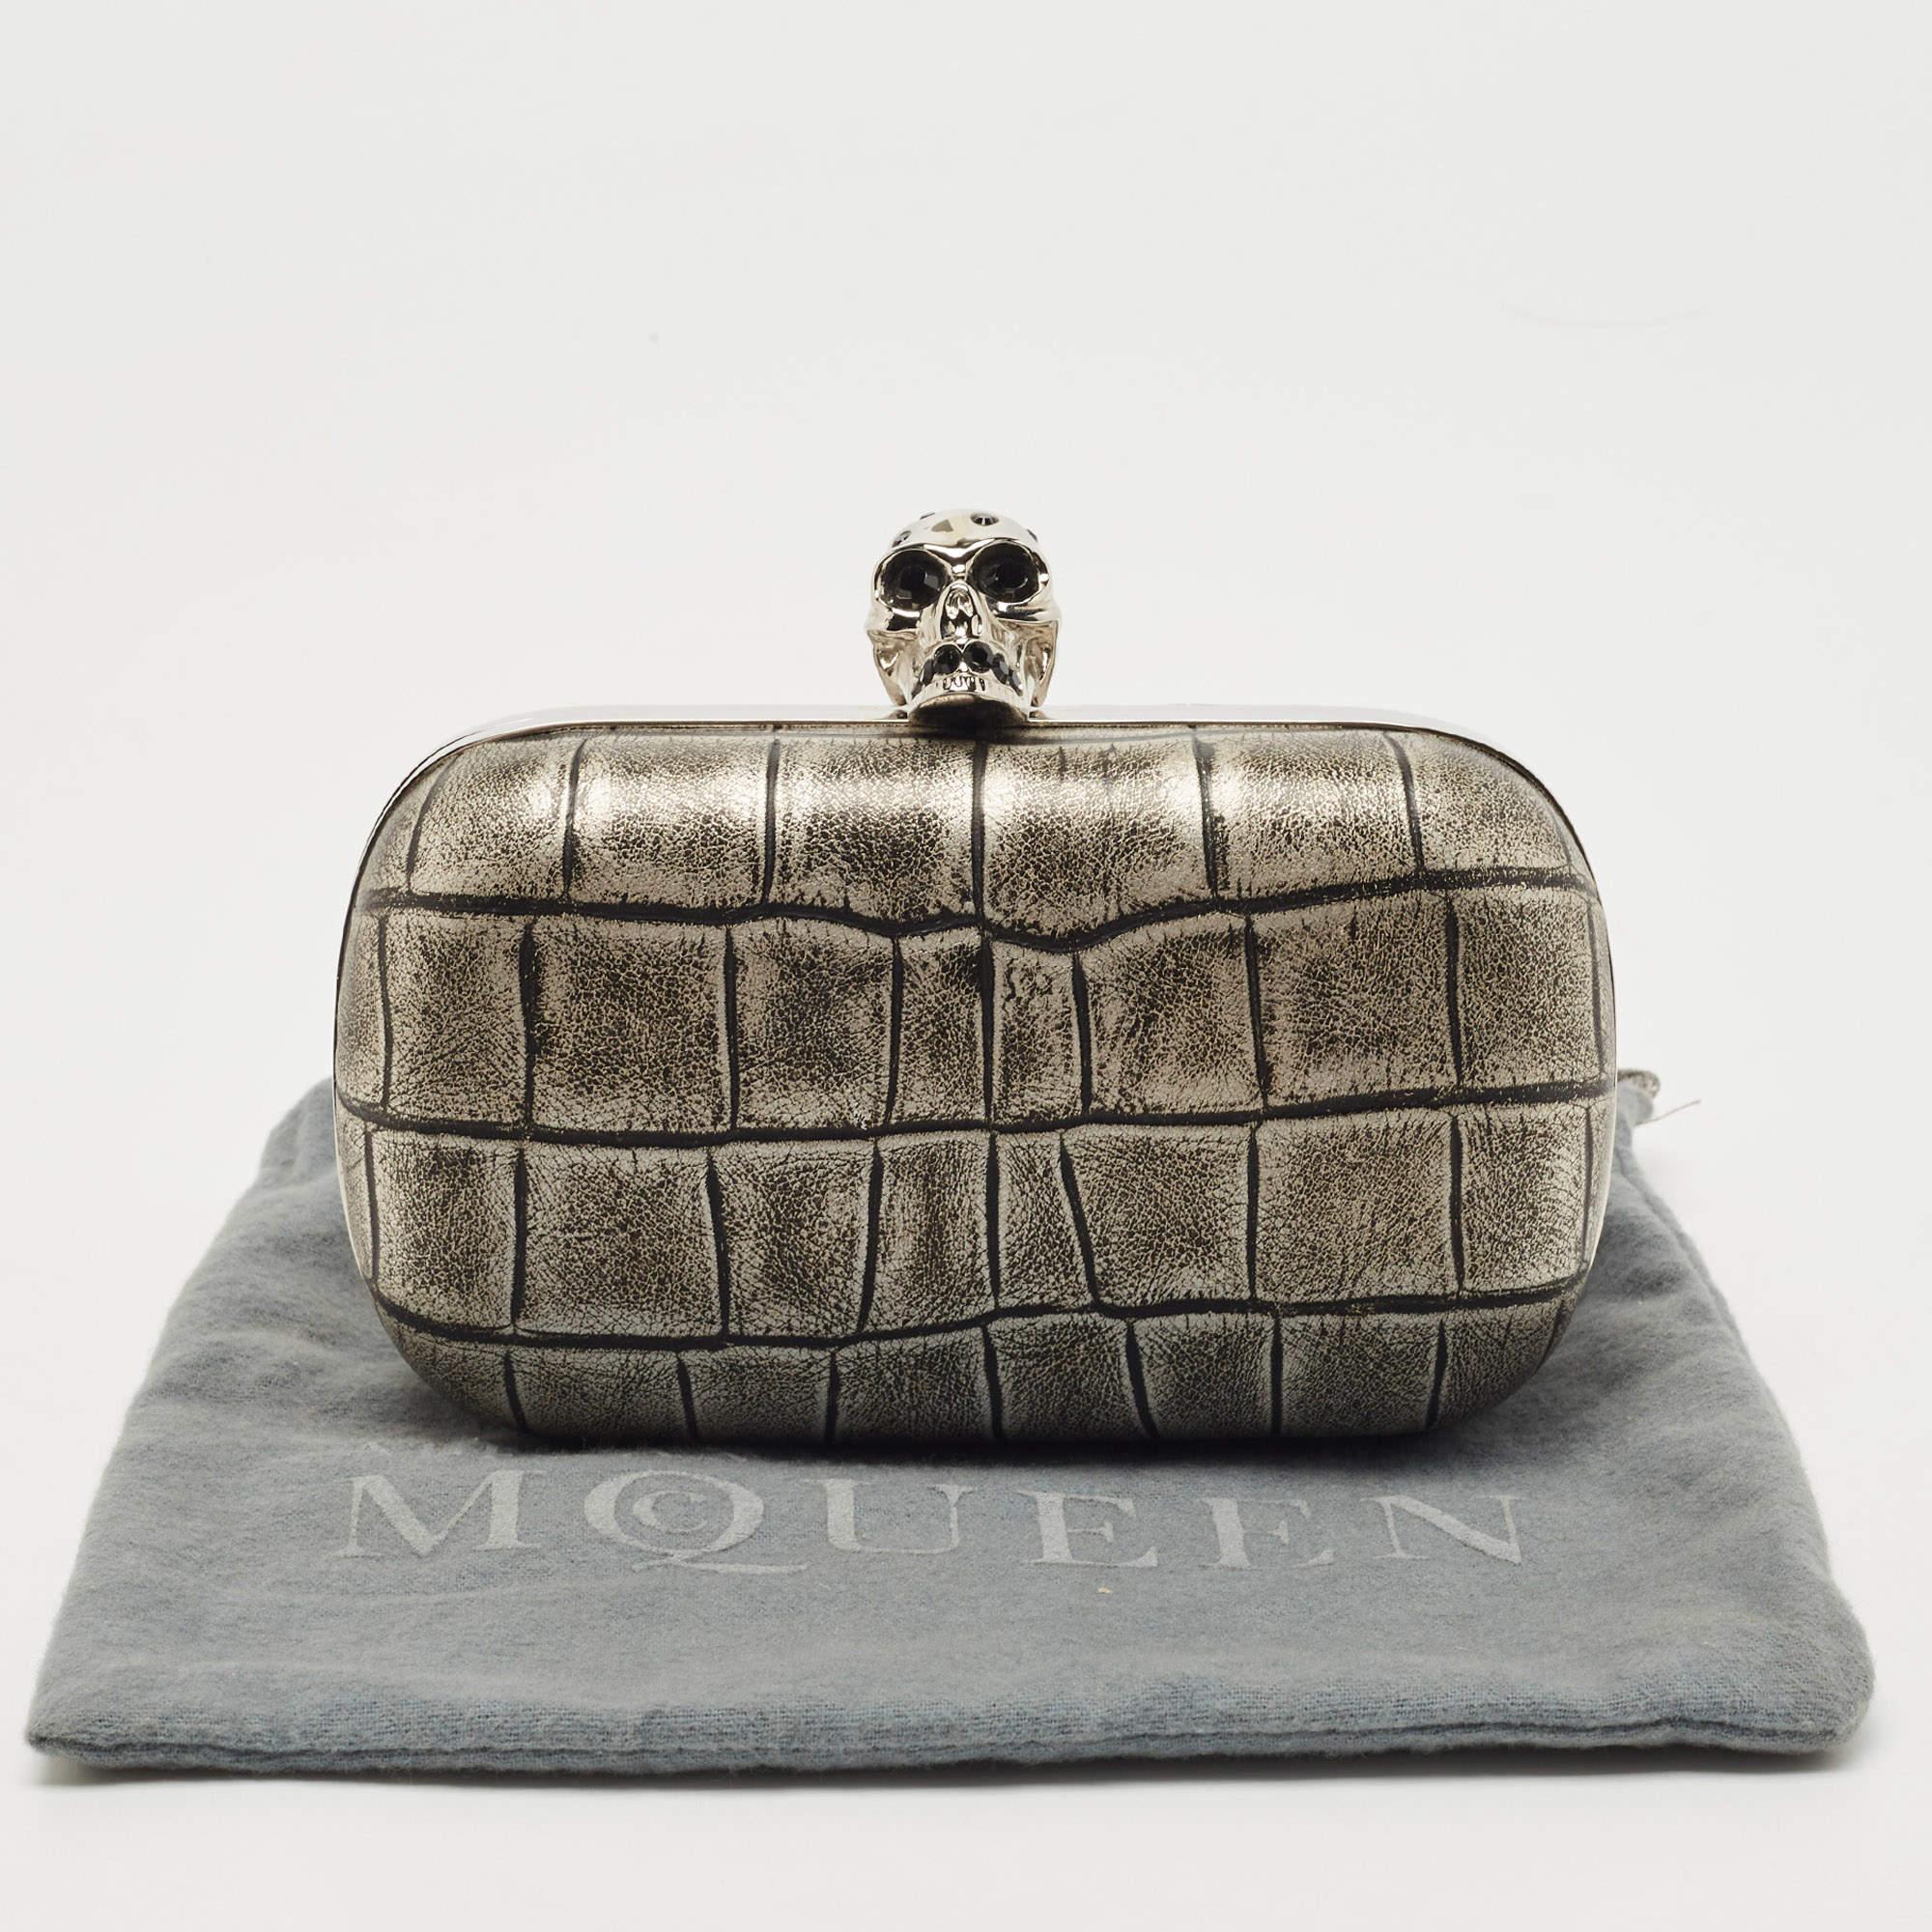 Alexander McQueen Grey/Black Croc Embossed Leather Skull Box Clutch 2